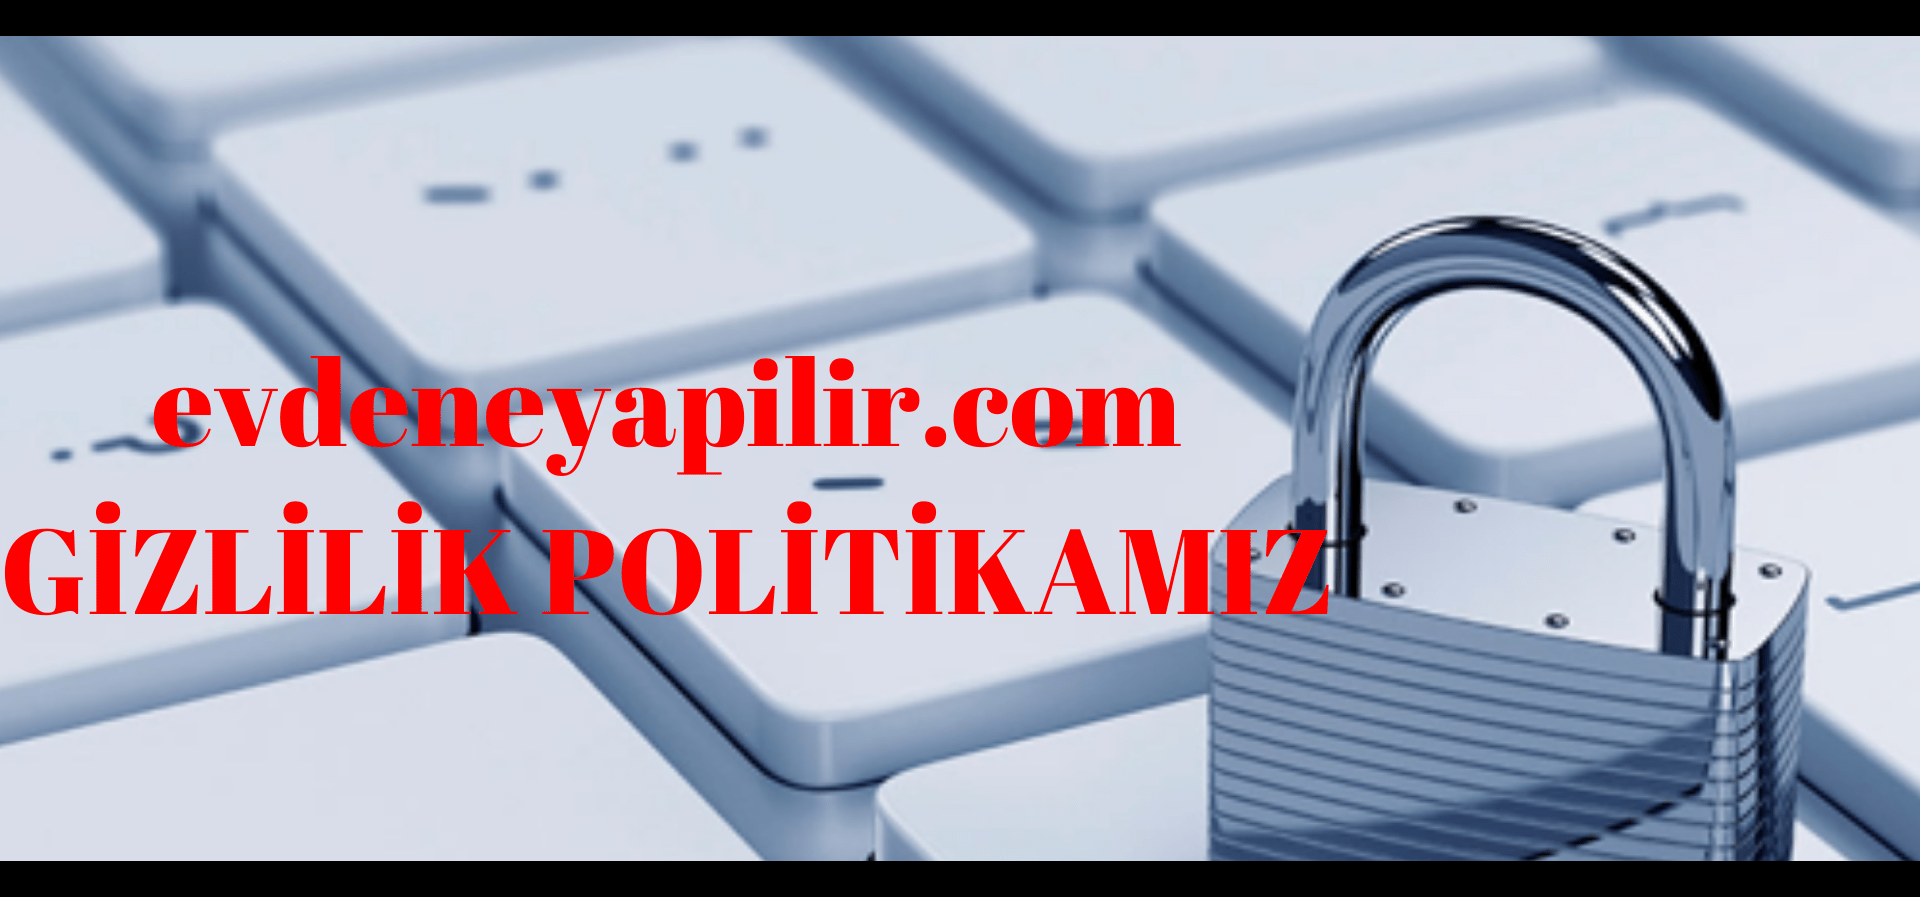 evdeneyapilir.com GIZLILIK POLITIKAMIZ